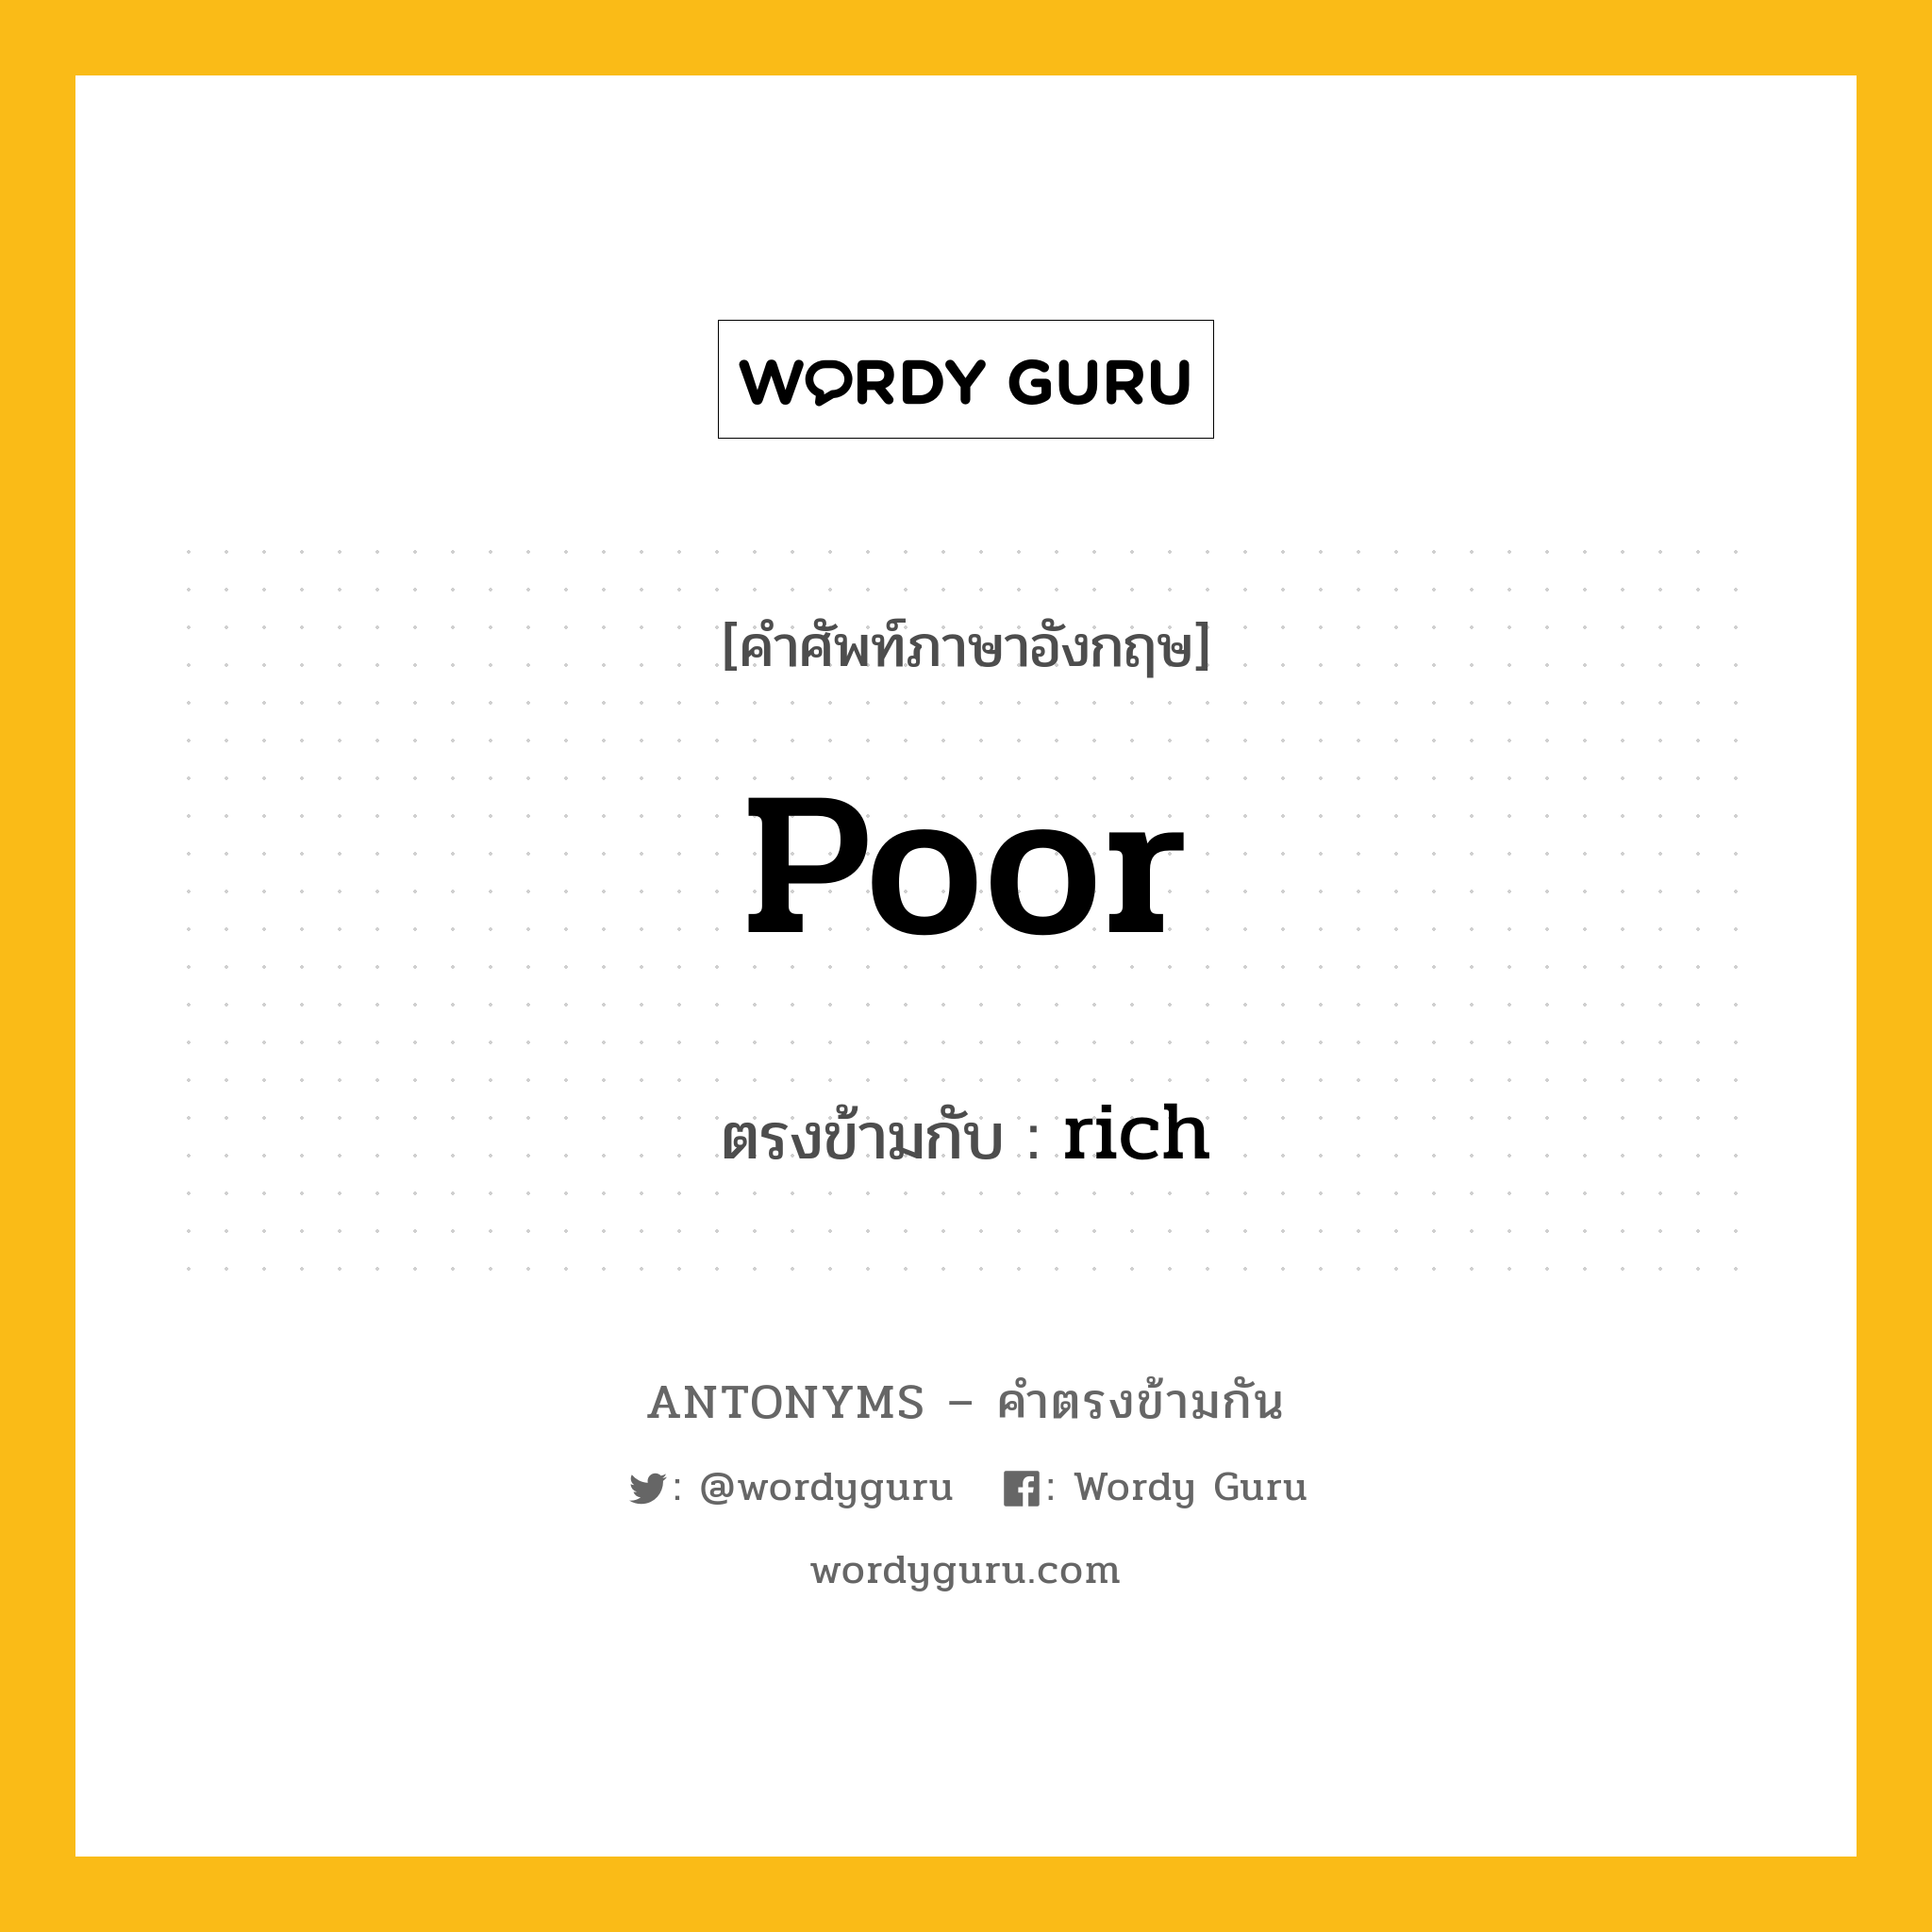 poor เป็นคำตรงข้ามกับคำไหนบ้าง?, คำศัพท์ภาษาอังกฤษ poor ตรงข้ามกับ rich หมวด rich